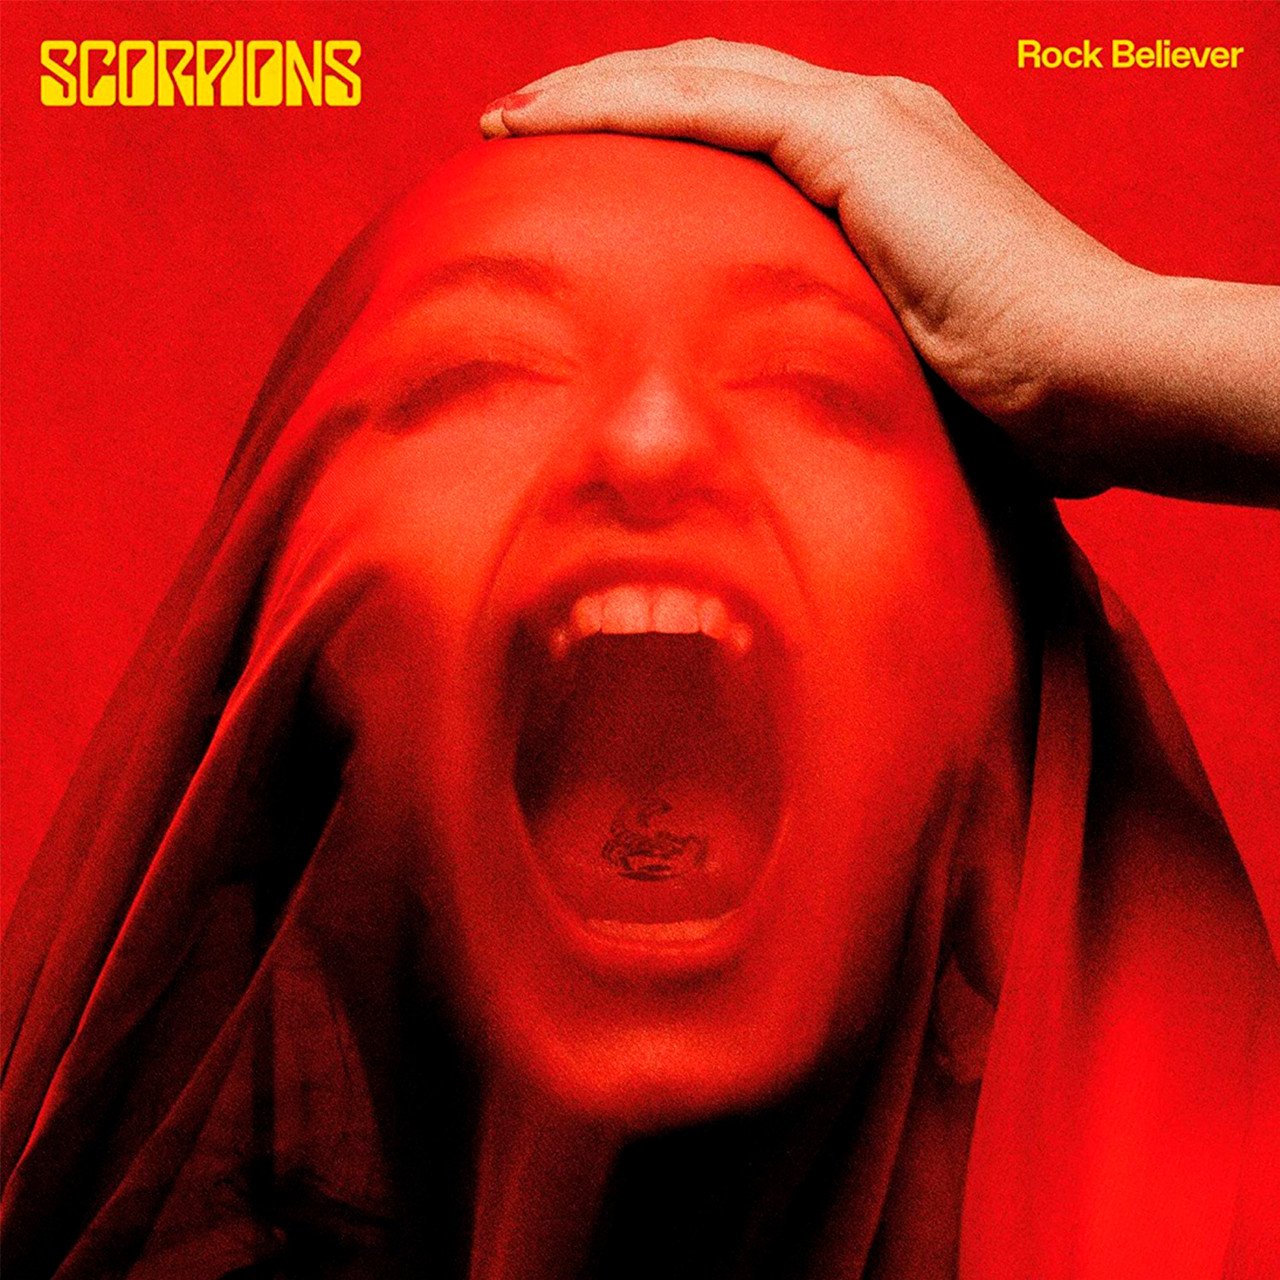 Scorpions - Rock Believer (Deluxe Edition) [2CD] Import